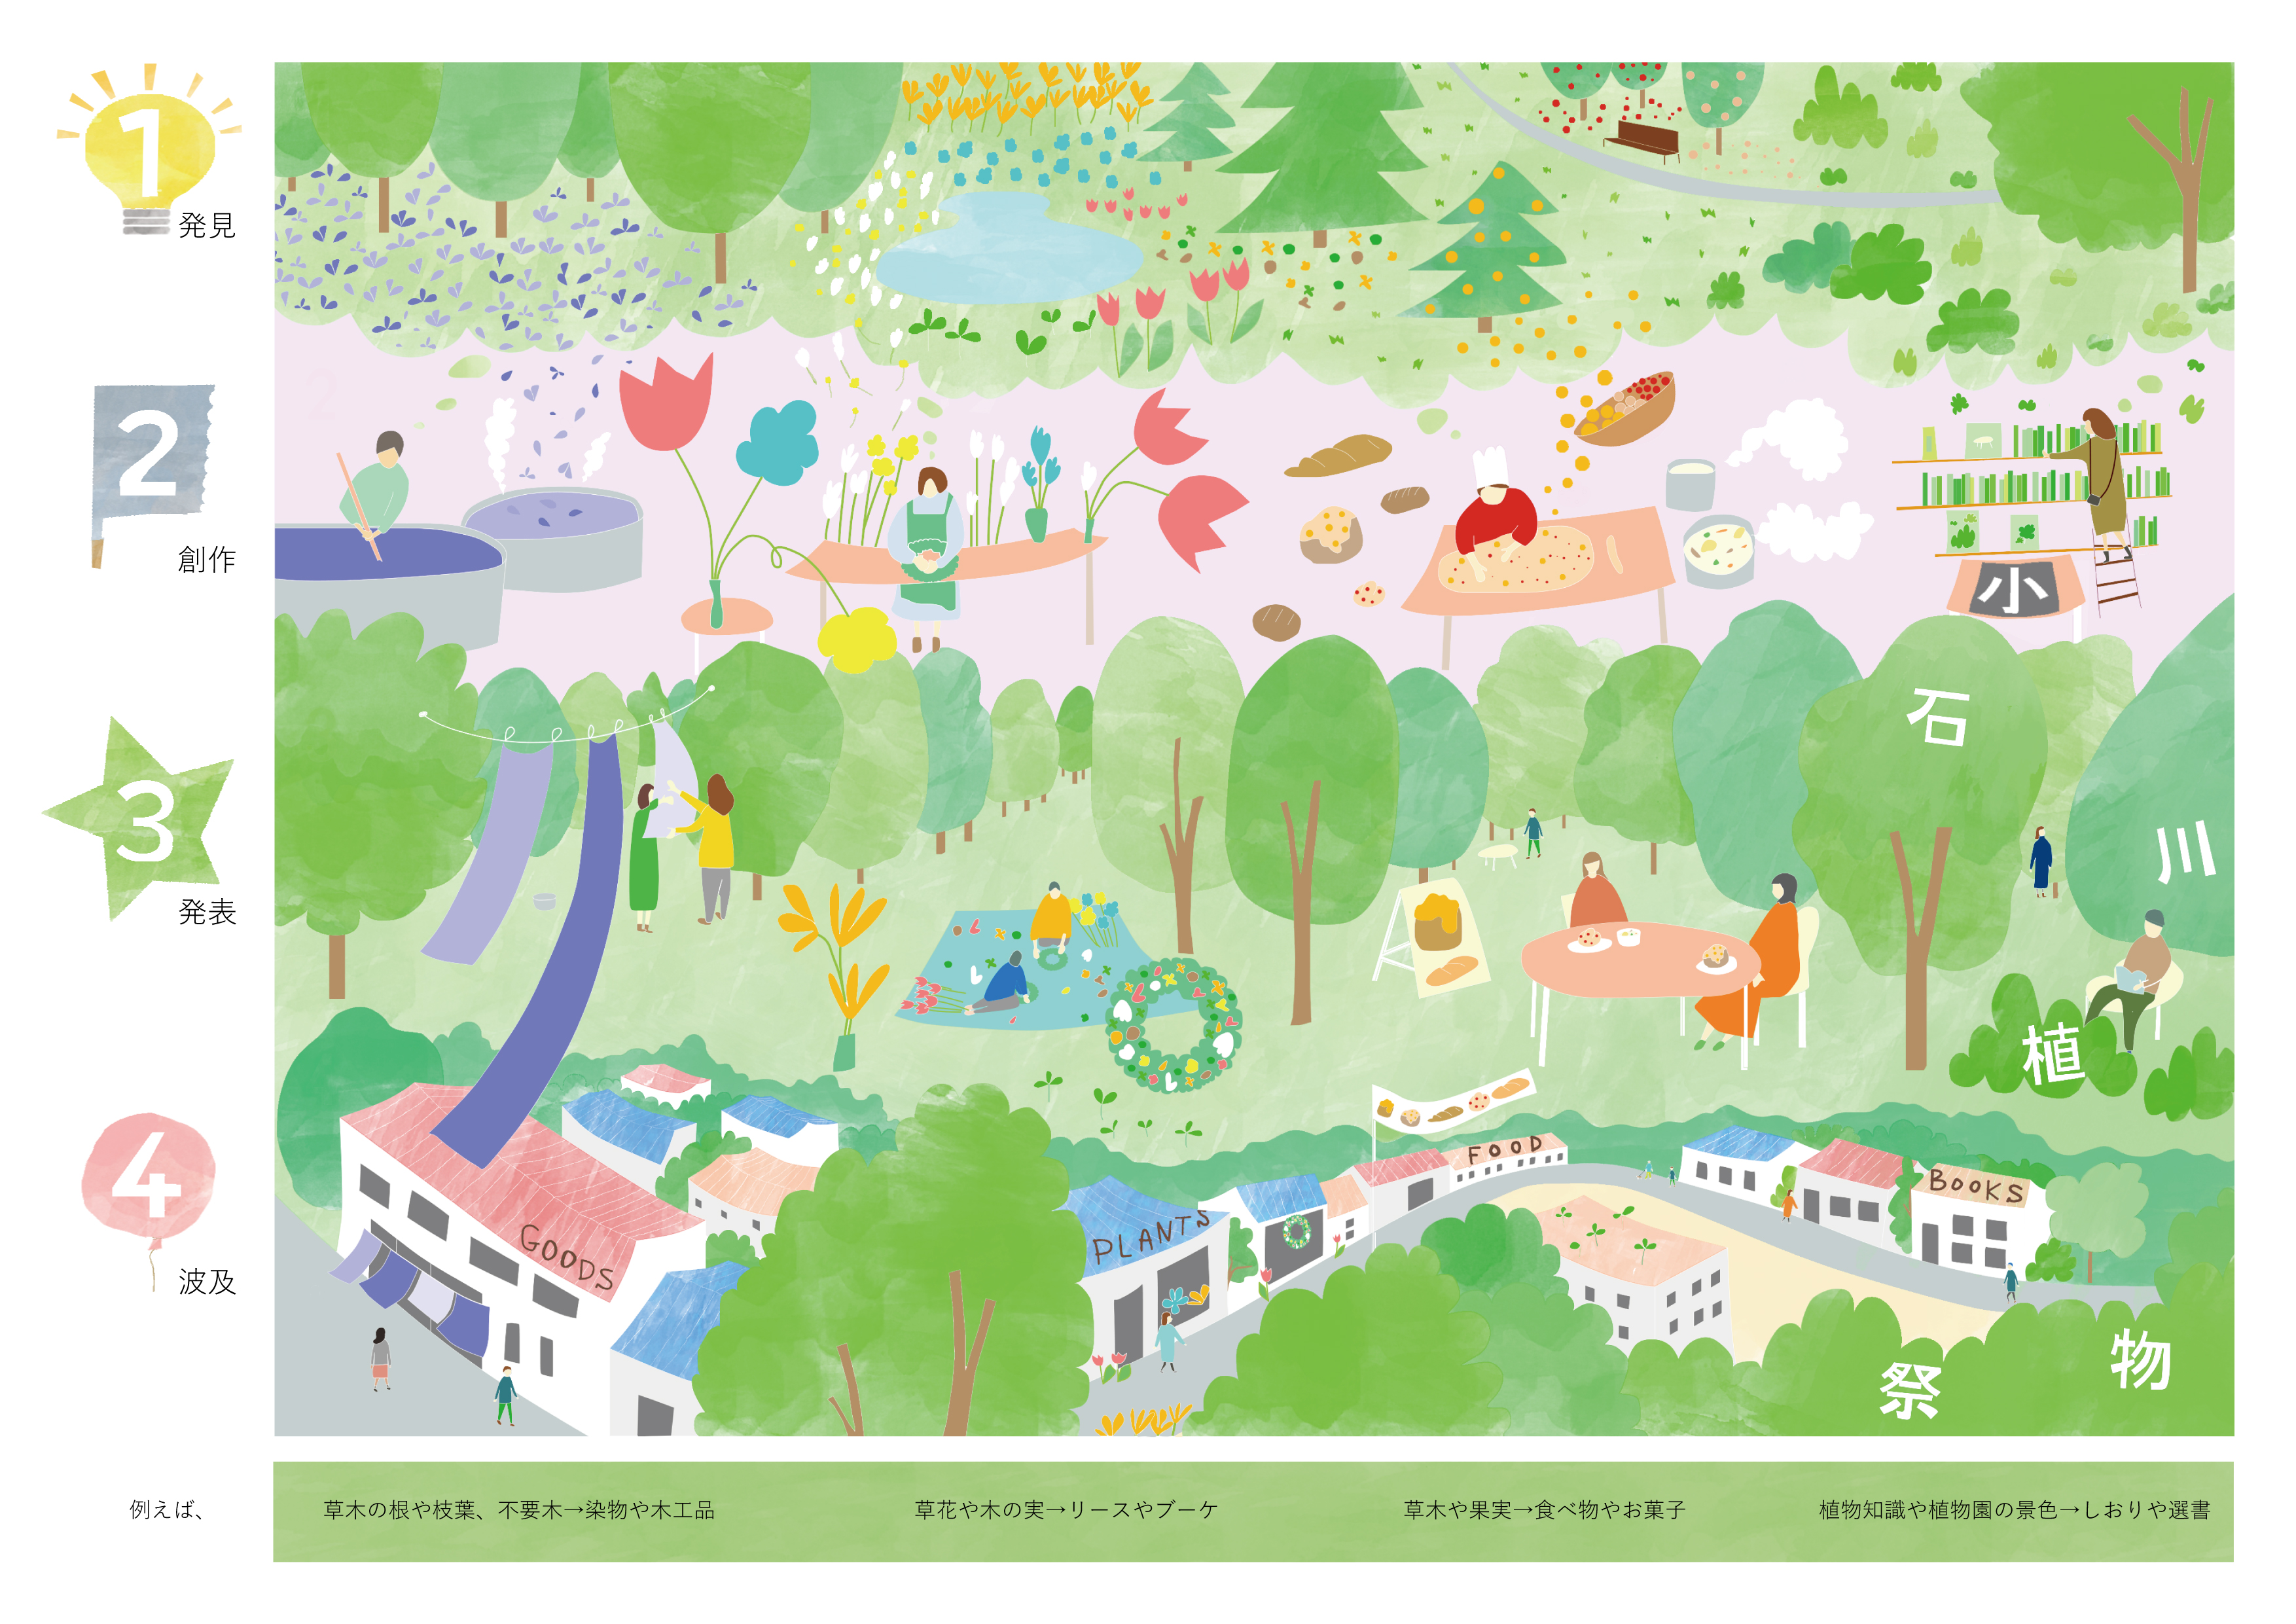 小石川植物園として初となる 小石川植物祭 を 建築家ユニットkasaと小石川植物園による共催で10月に開催決定 株式会社herbisのプレスリリース